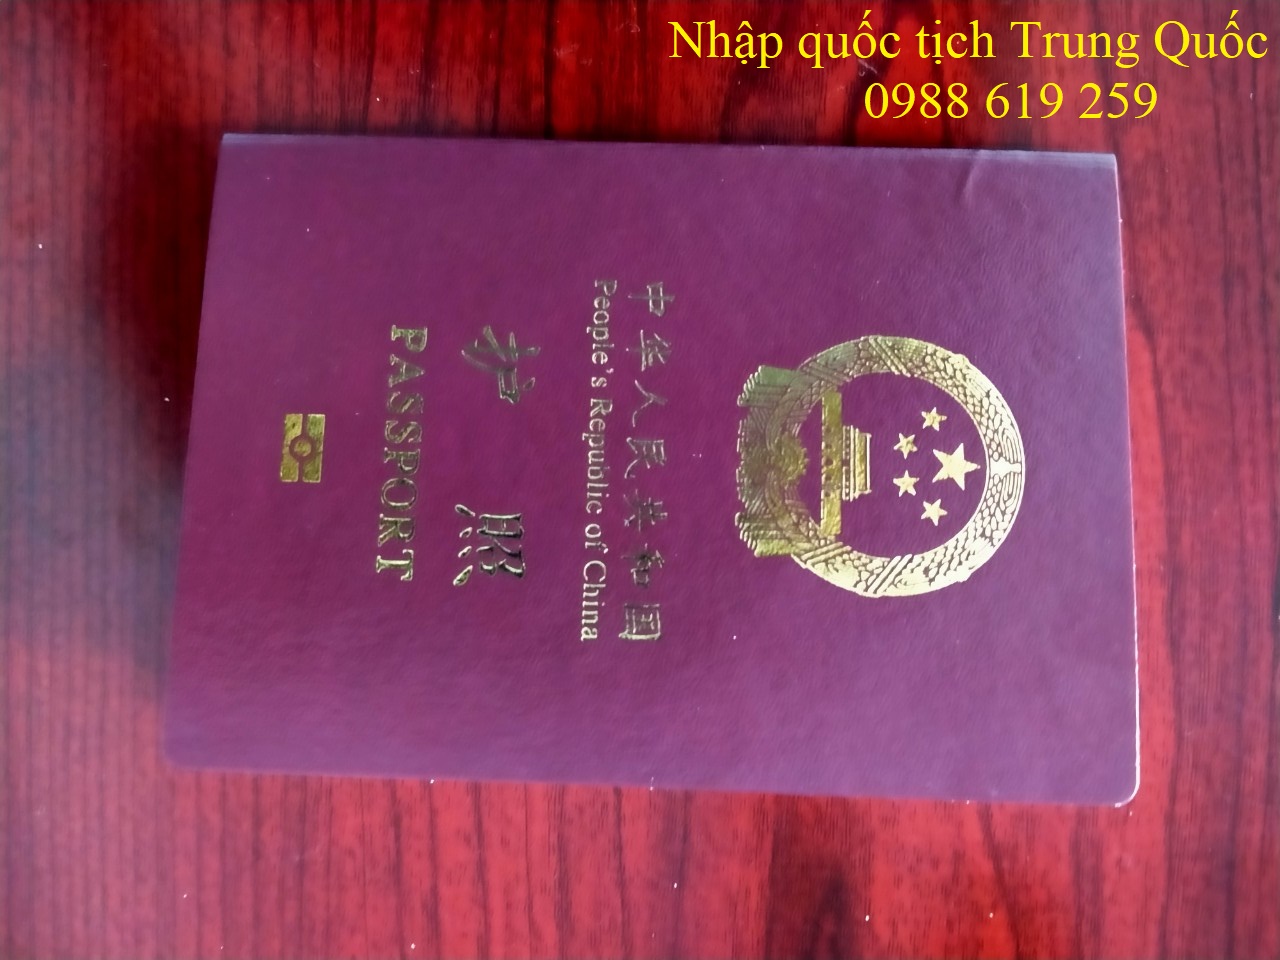 Nhập quốc tịch Trung Quốc sau khi kết hôn 